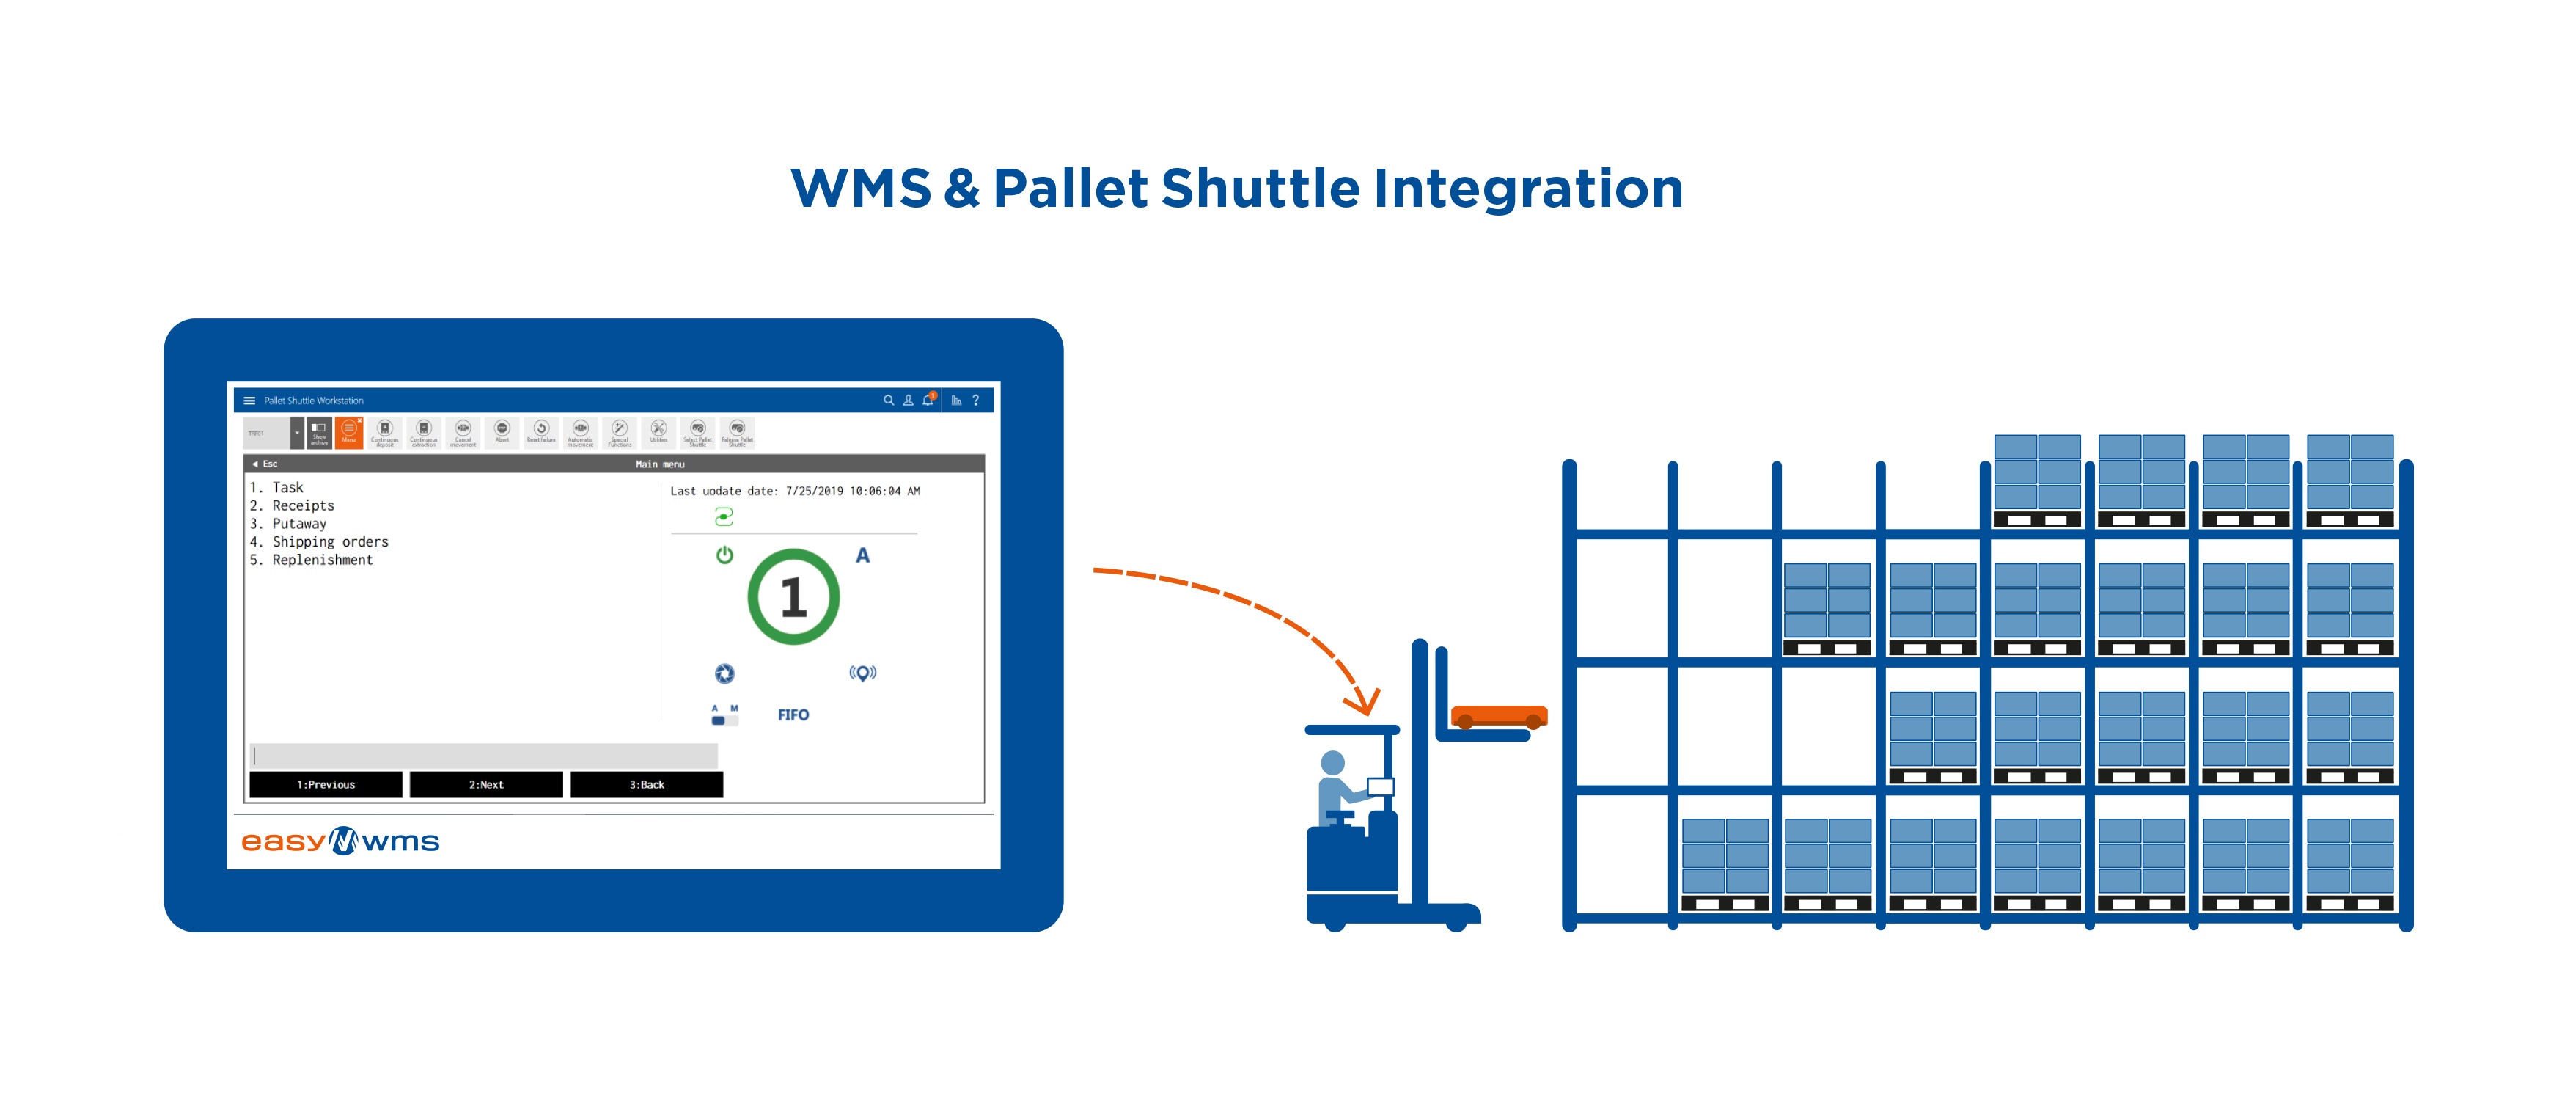 WMS & Pallet Shuttle Integration